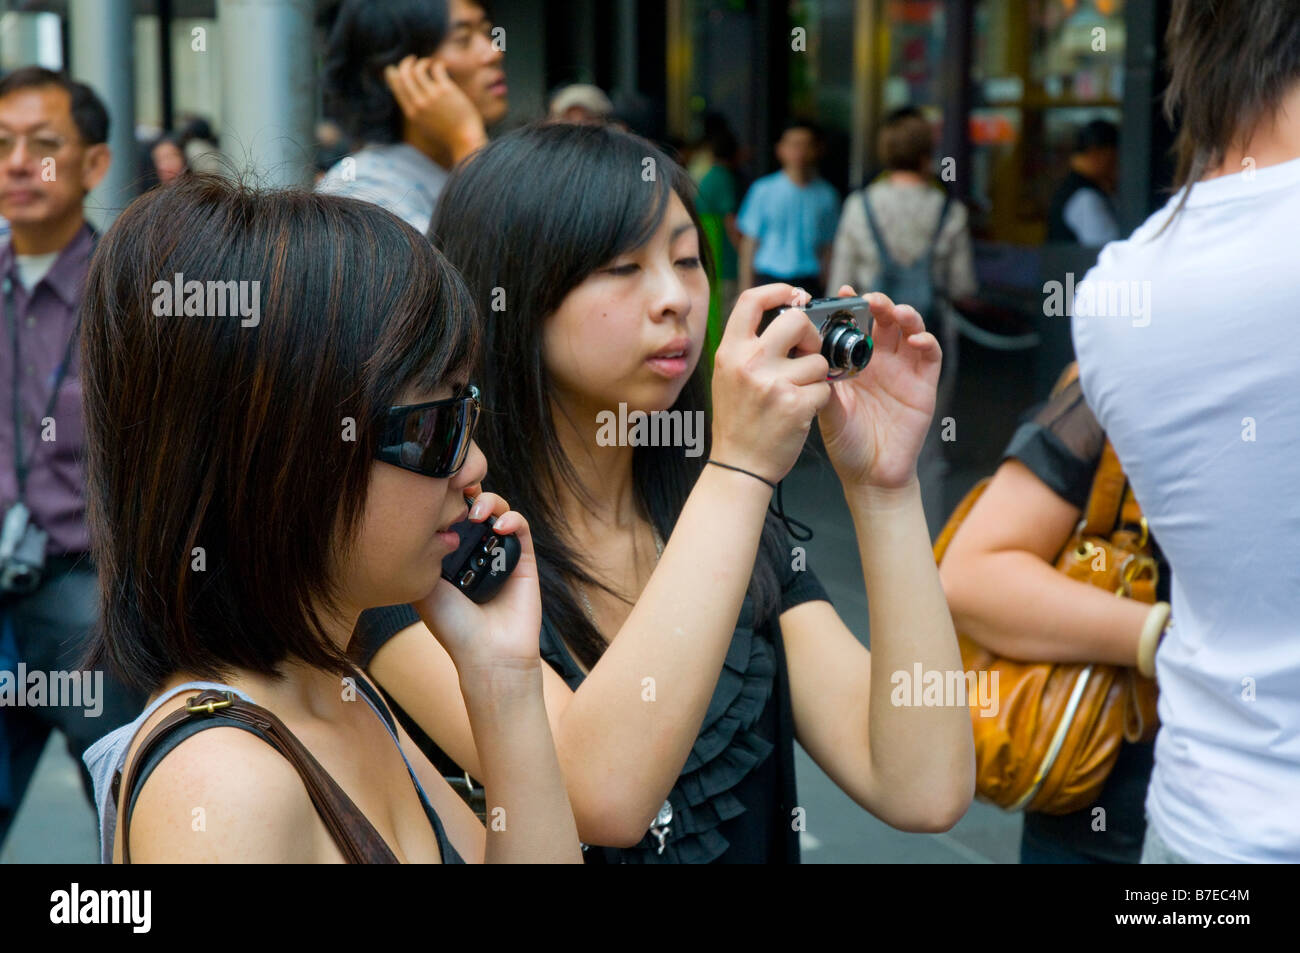 Zwei junge asiatische Mädchen mit Hilfe moderner Technologie in Form von einem Mobiltelefon und einer Digitalkamera Stockfoto